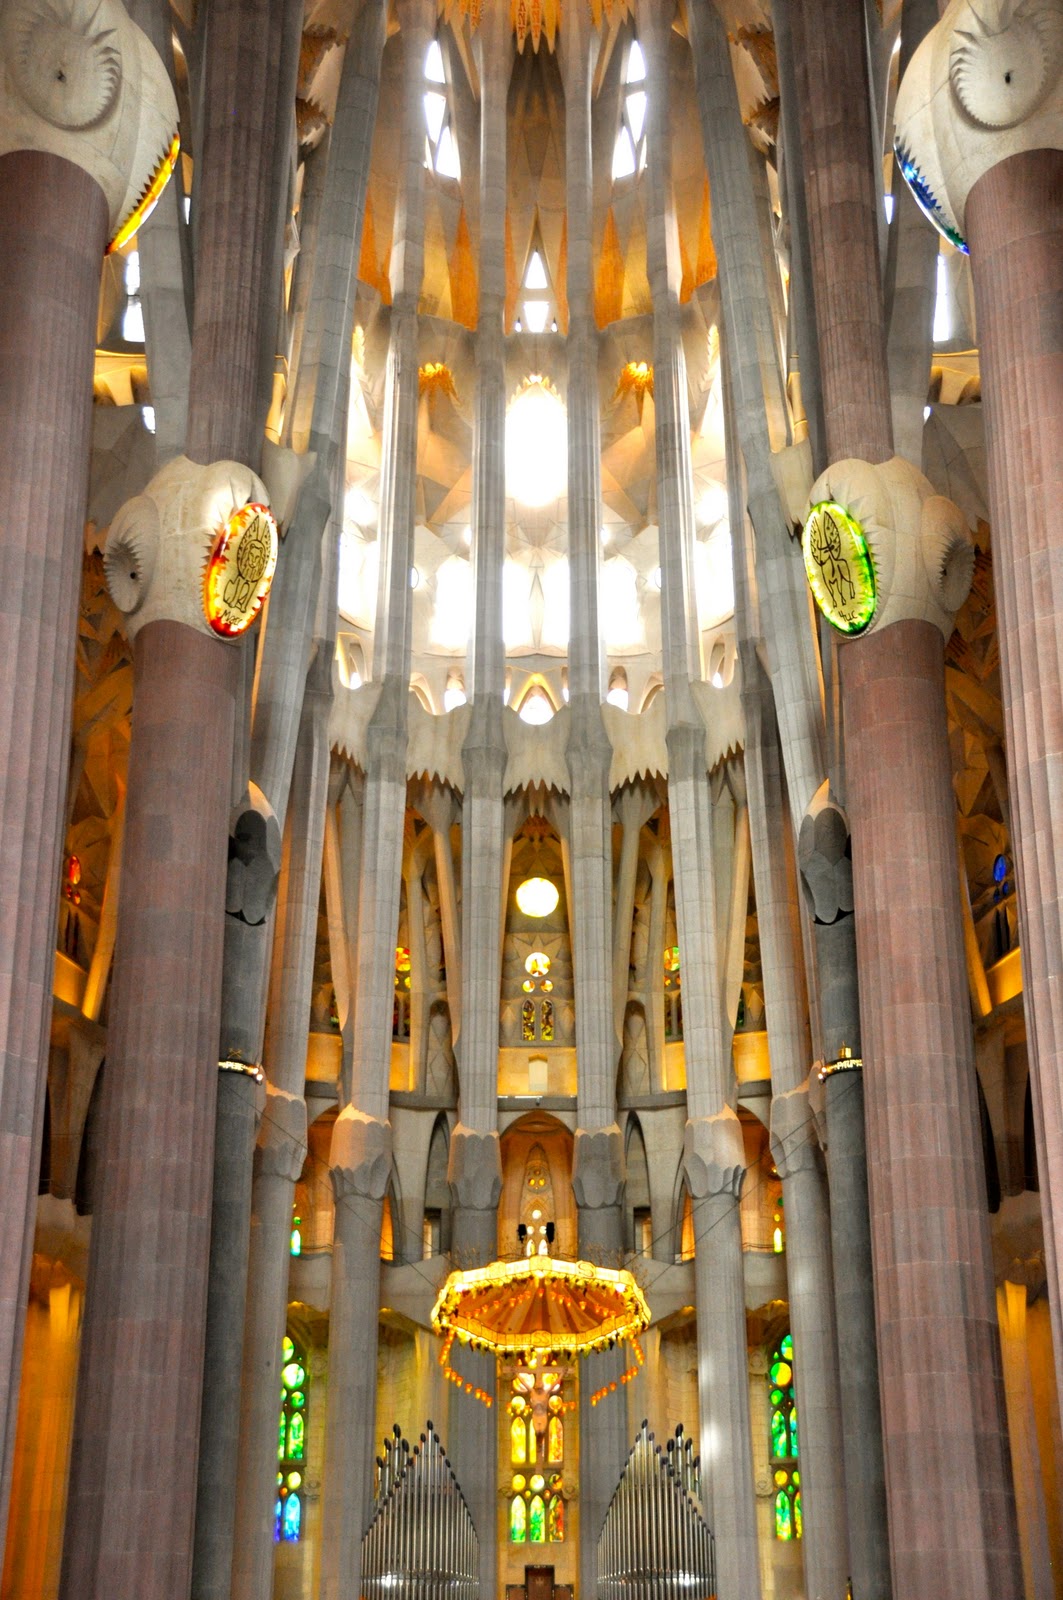 karensfavoritephotos: The Interior of the Sagrada Familia